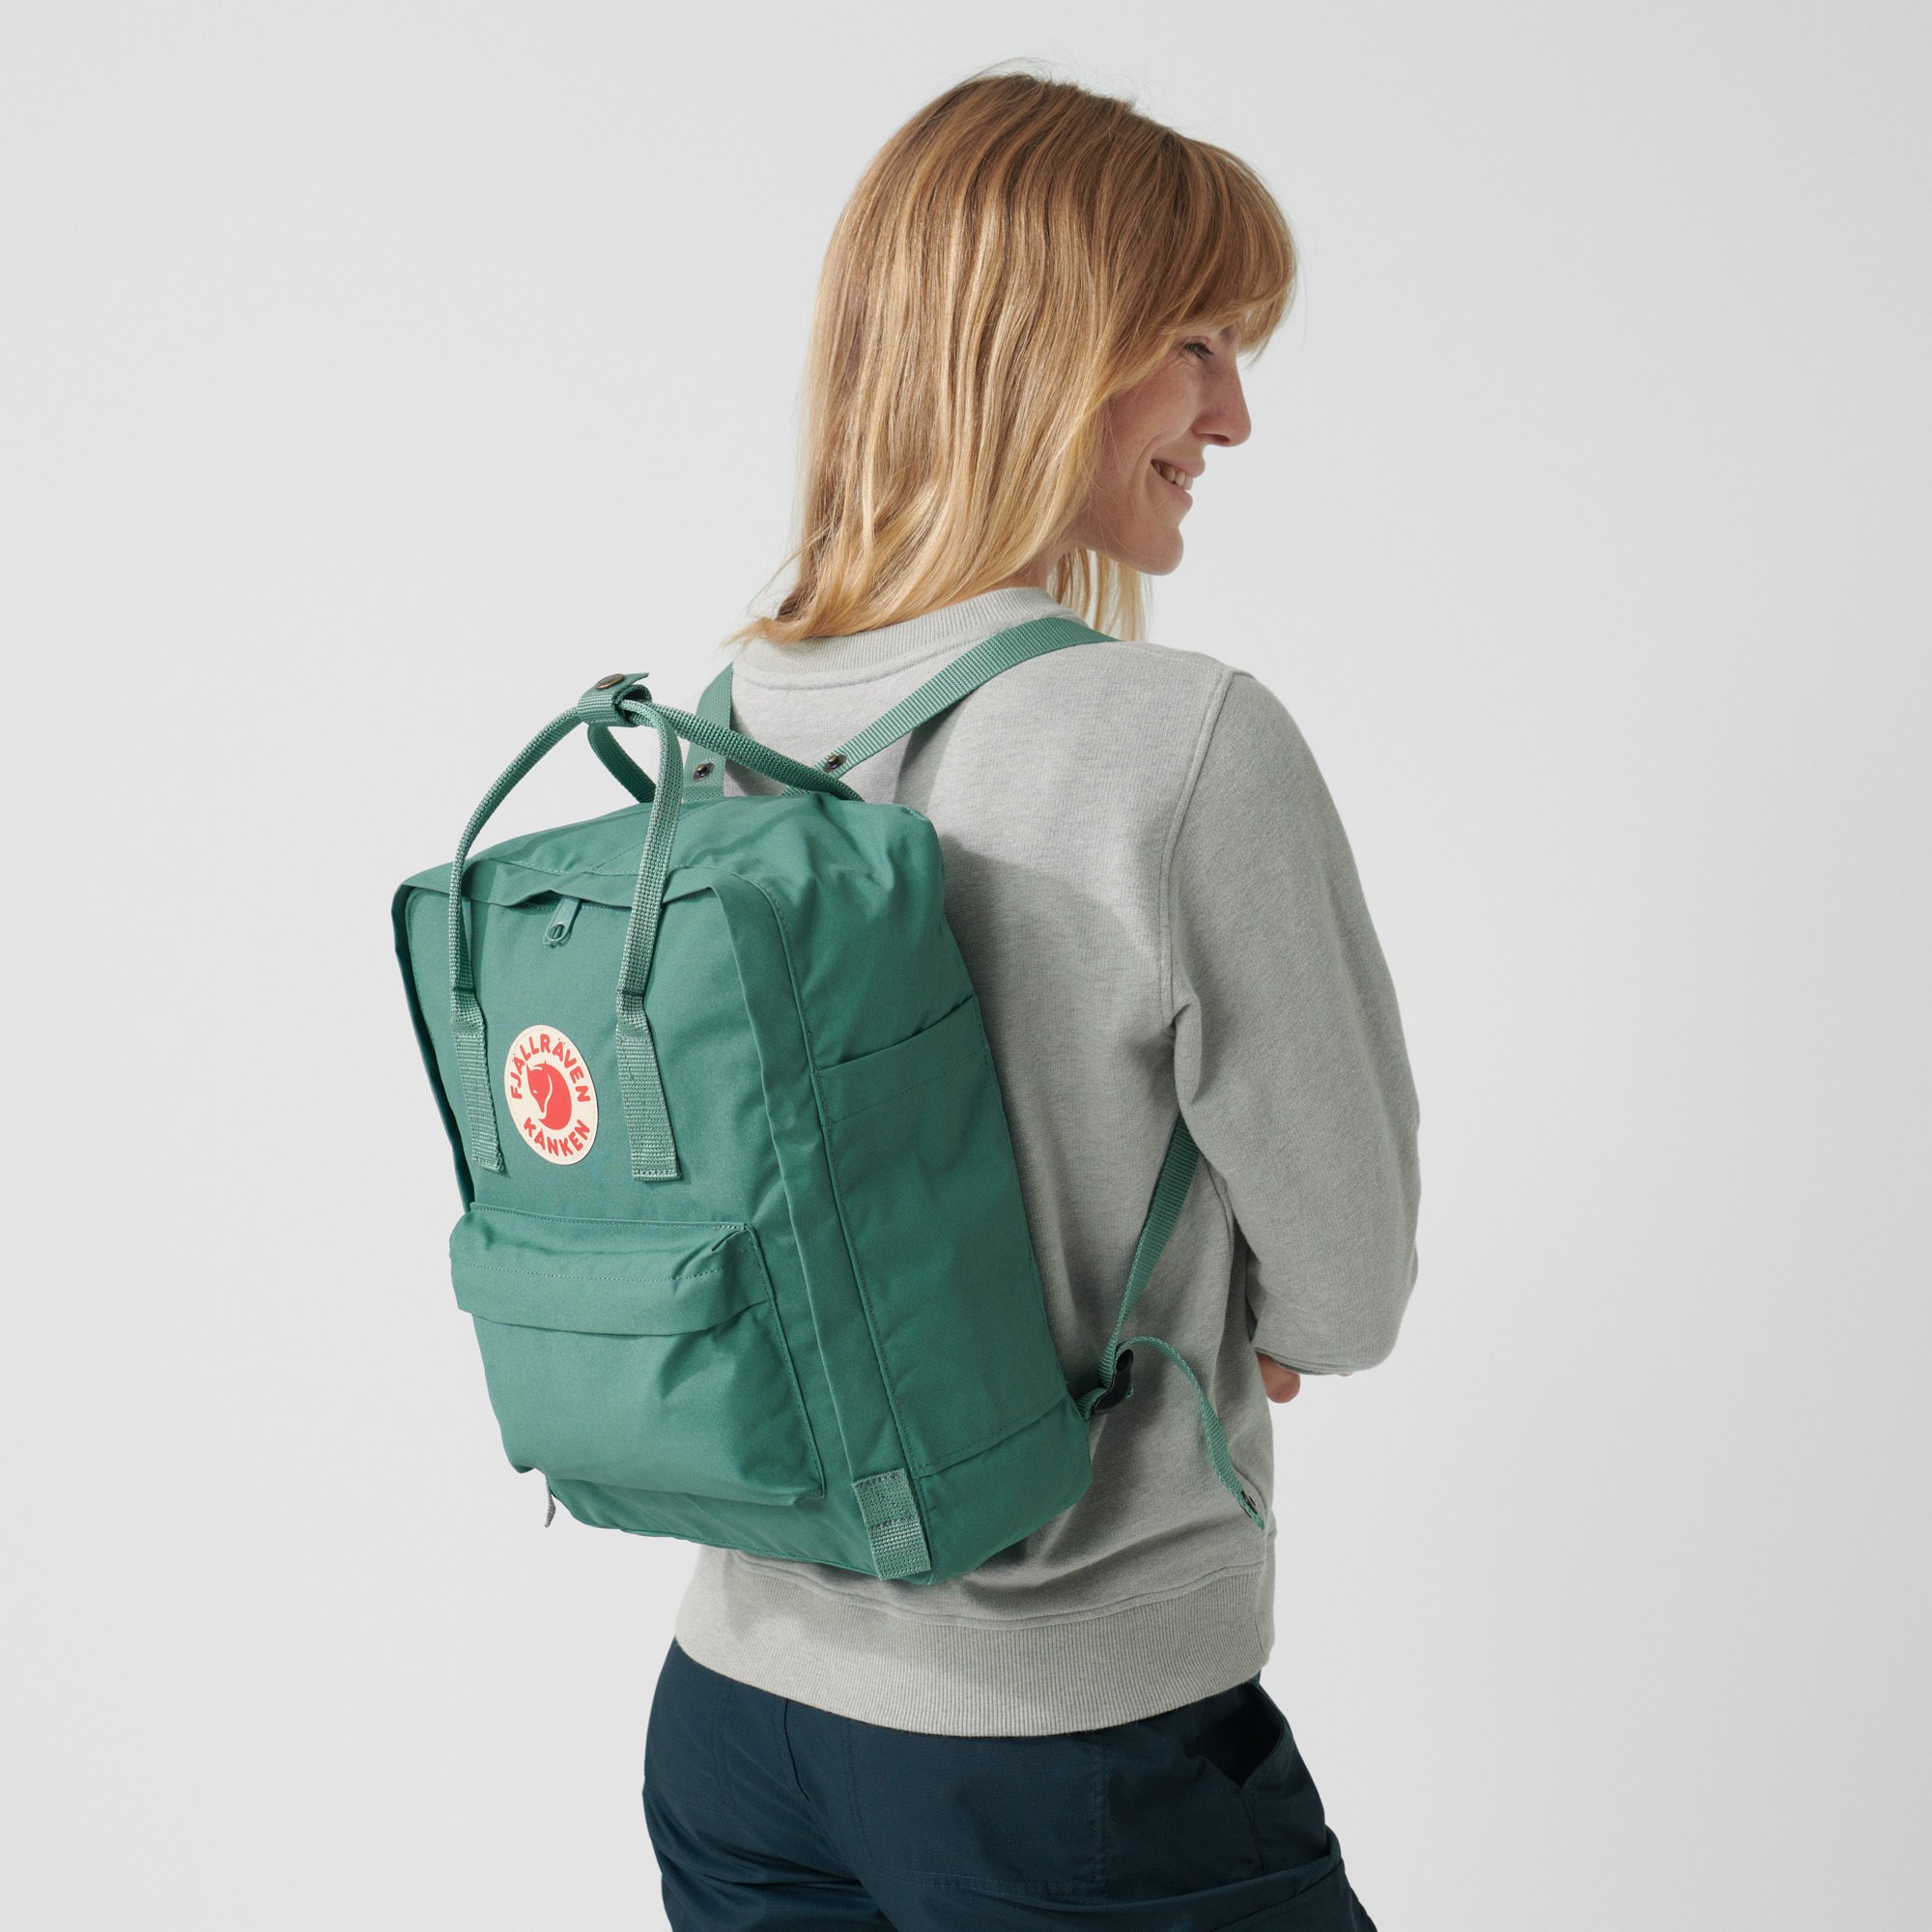 Kanken Classic Backpack for Everyday Fog Fjallraven 